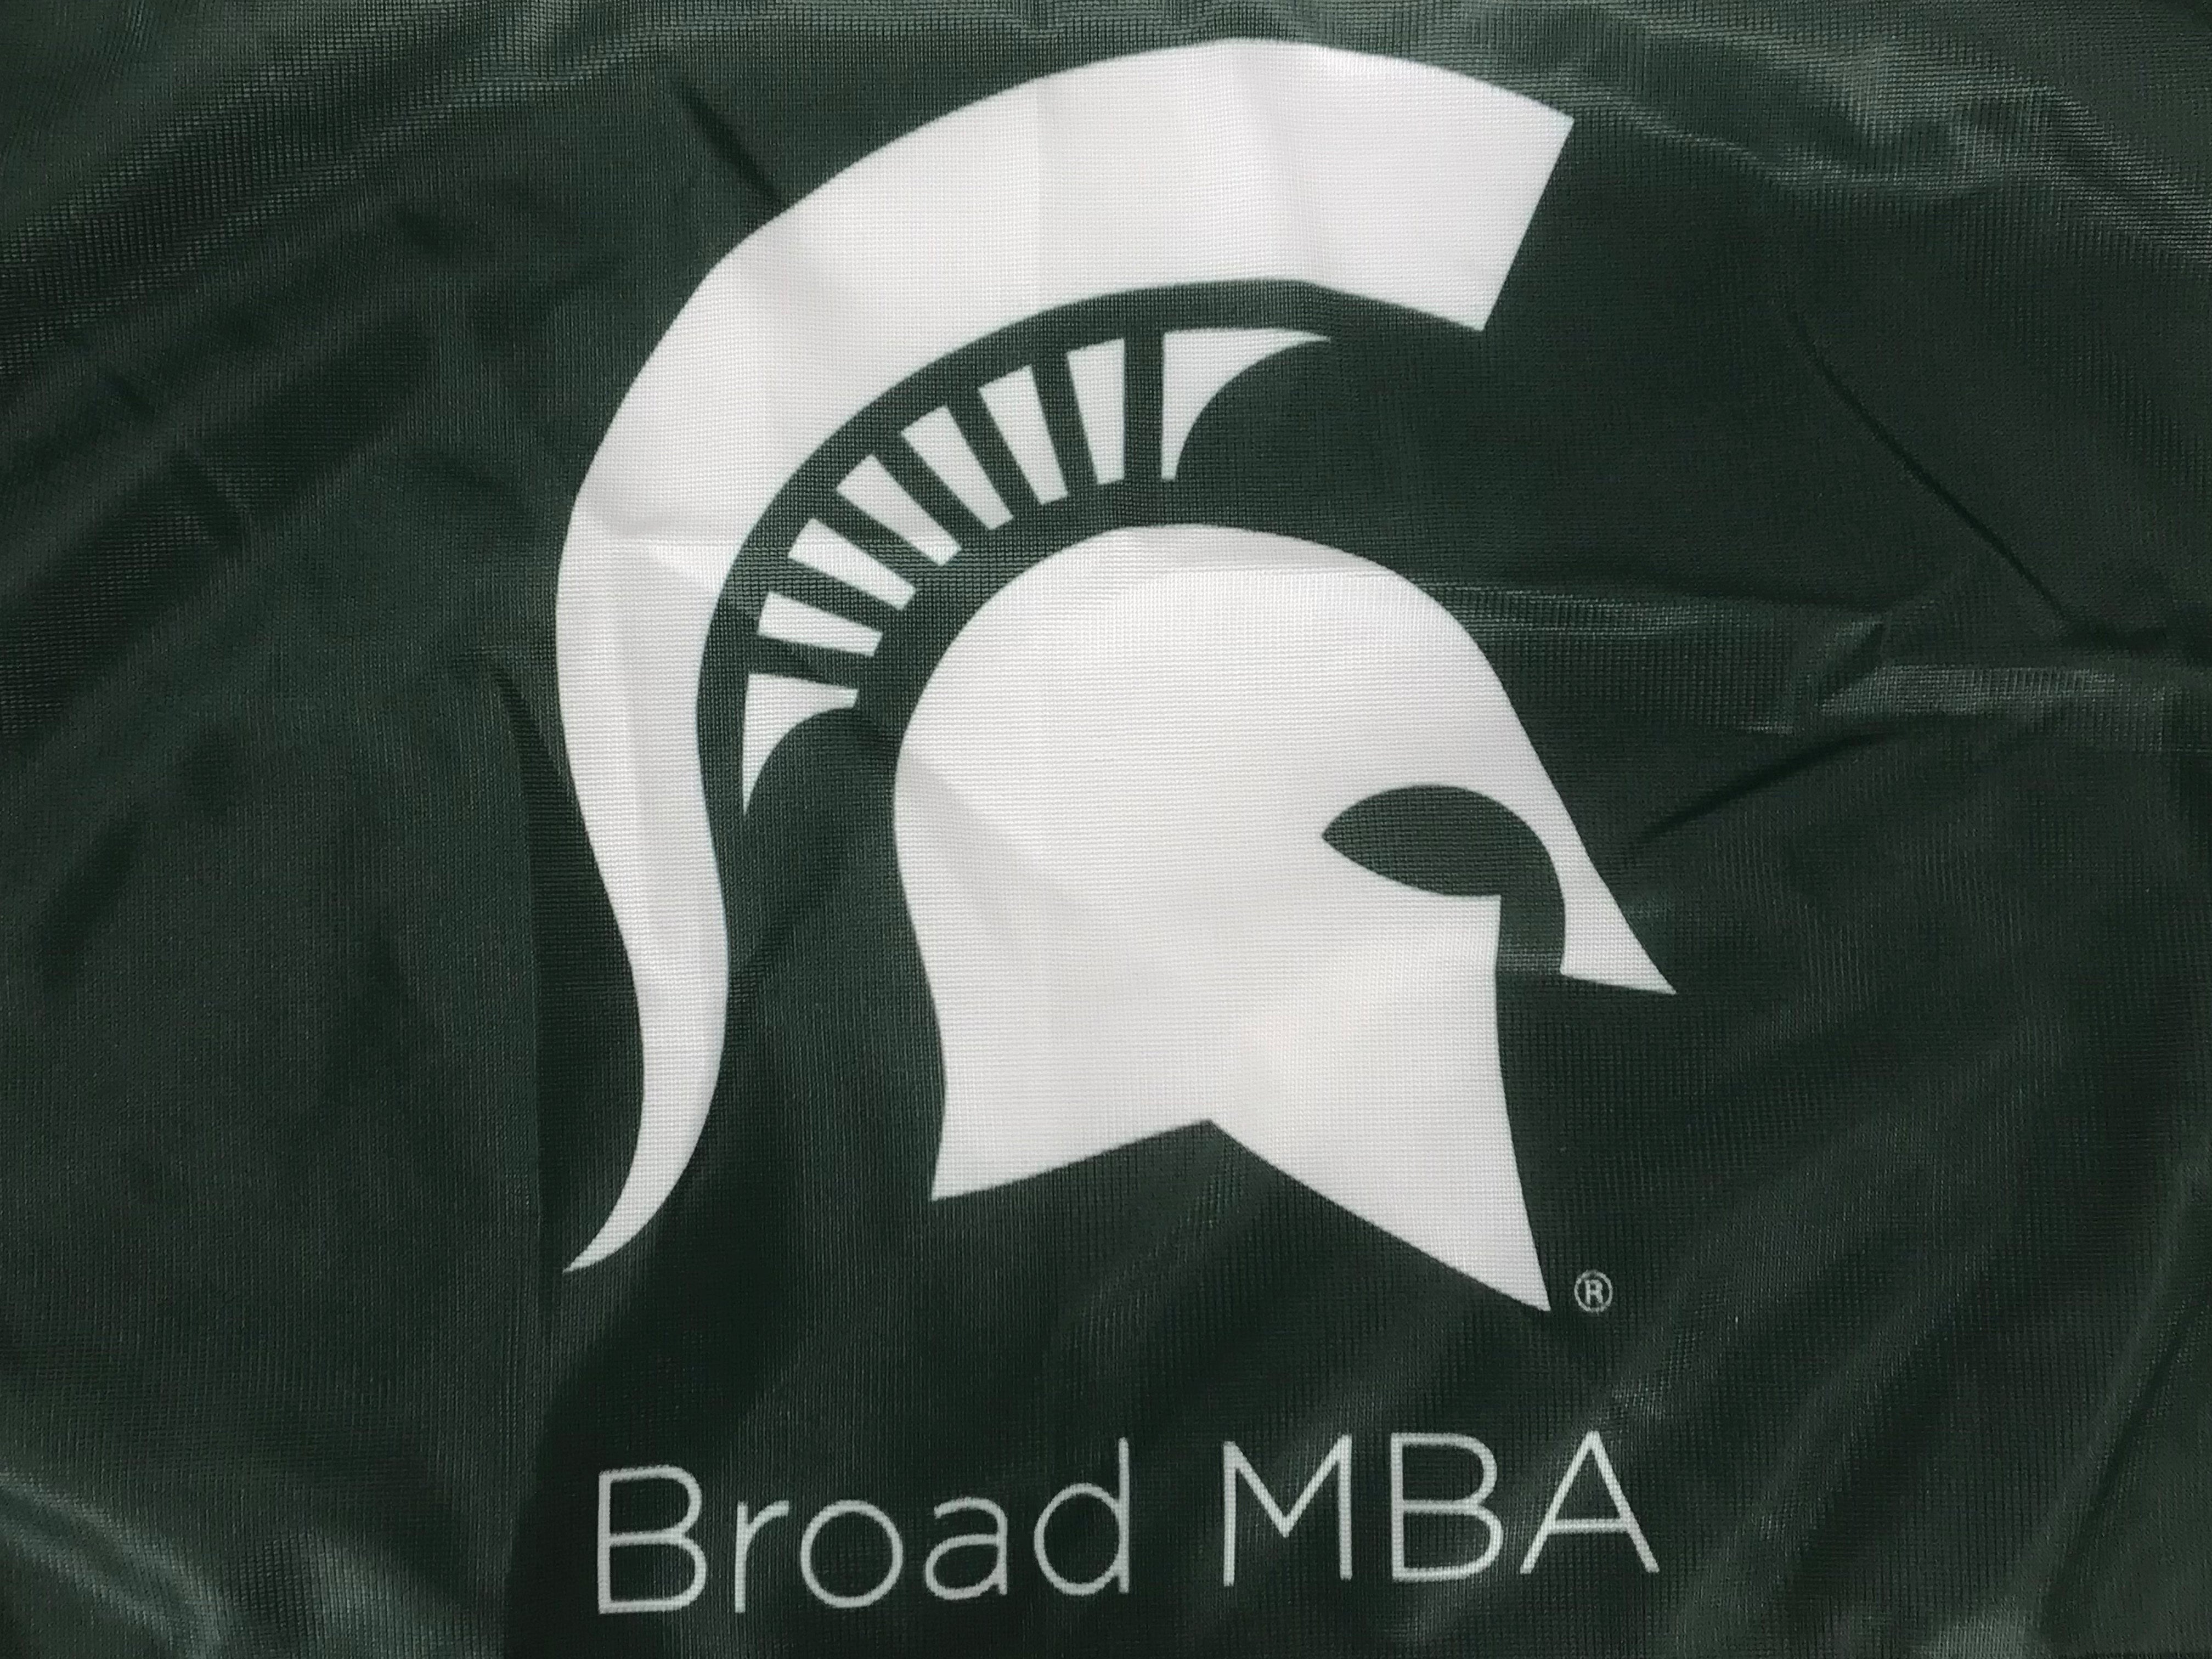 MSU Broad MBA Green & White Flag 17x11''